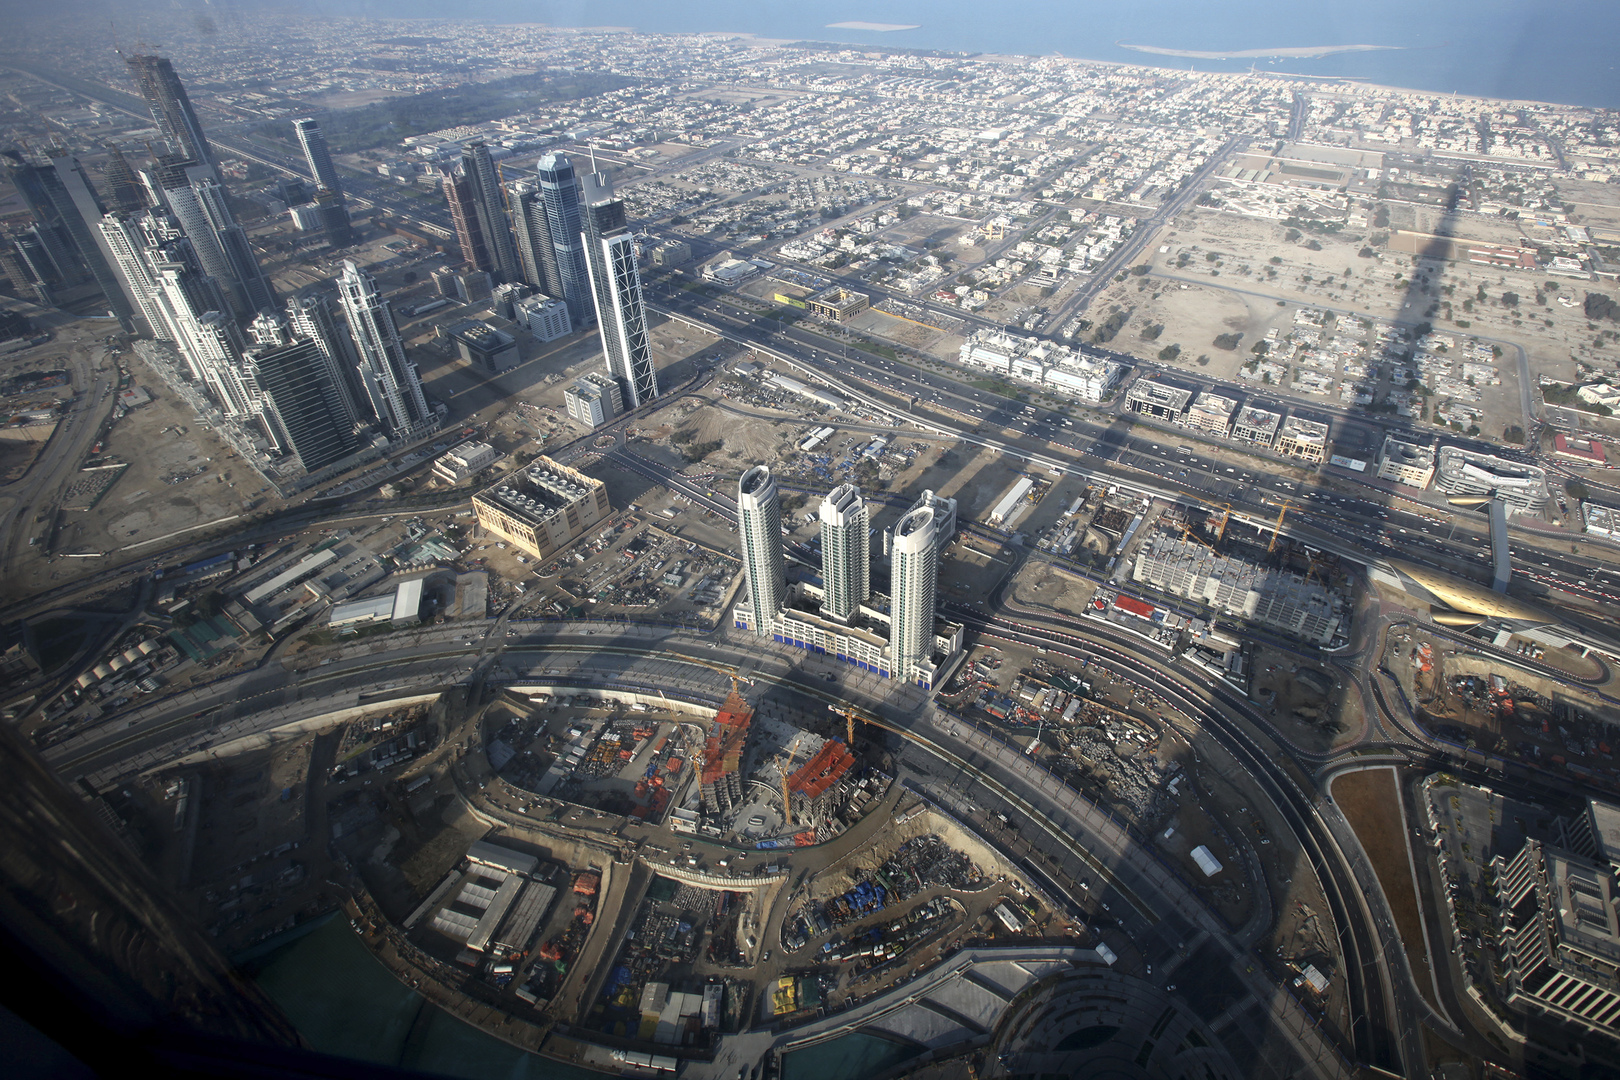 دبي تشهد أكبر صفقات عقارية خلال شهر واحد منذ 4 سنوات